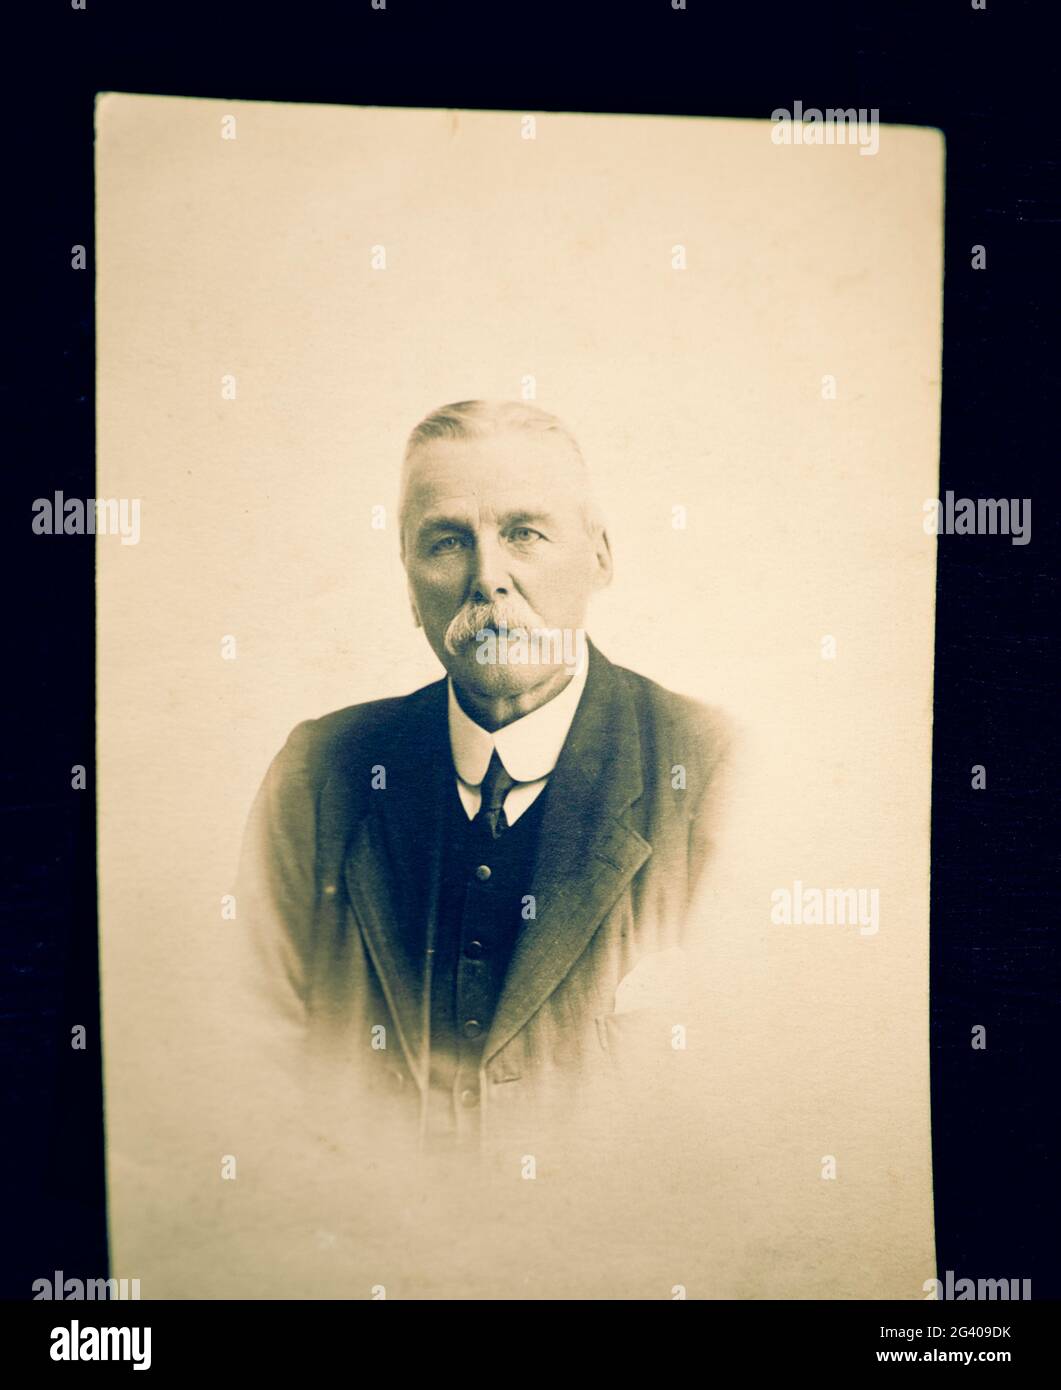 Photo vintage authentique portrait d'un homme âgé à l'expression sérieuse et à la moustache. Concept de nostalgie, historique, début du XXe siècle Banque D'Images